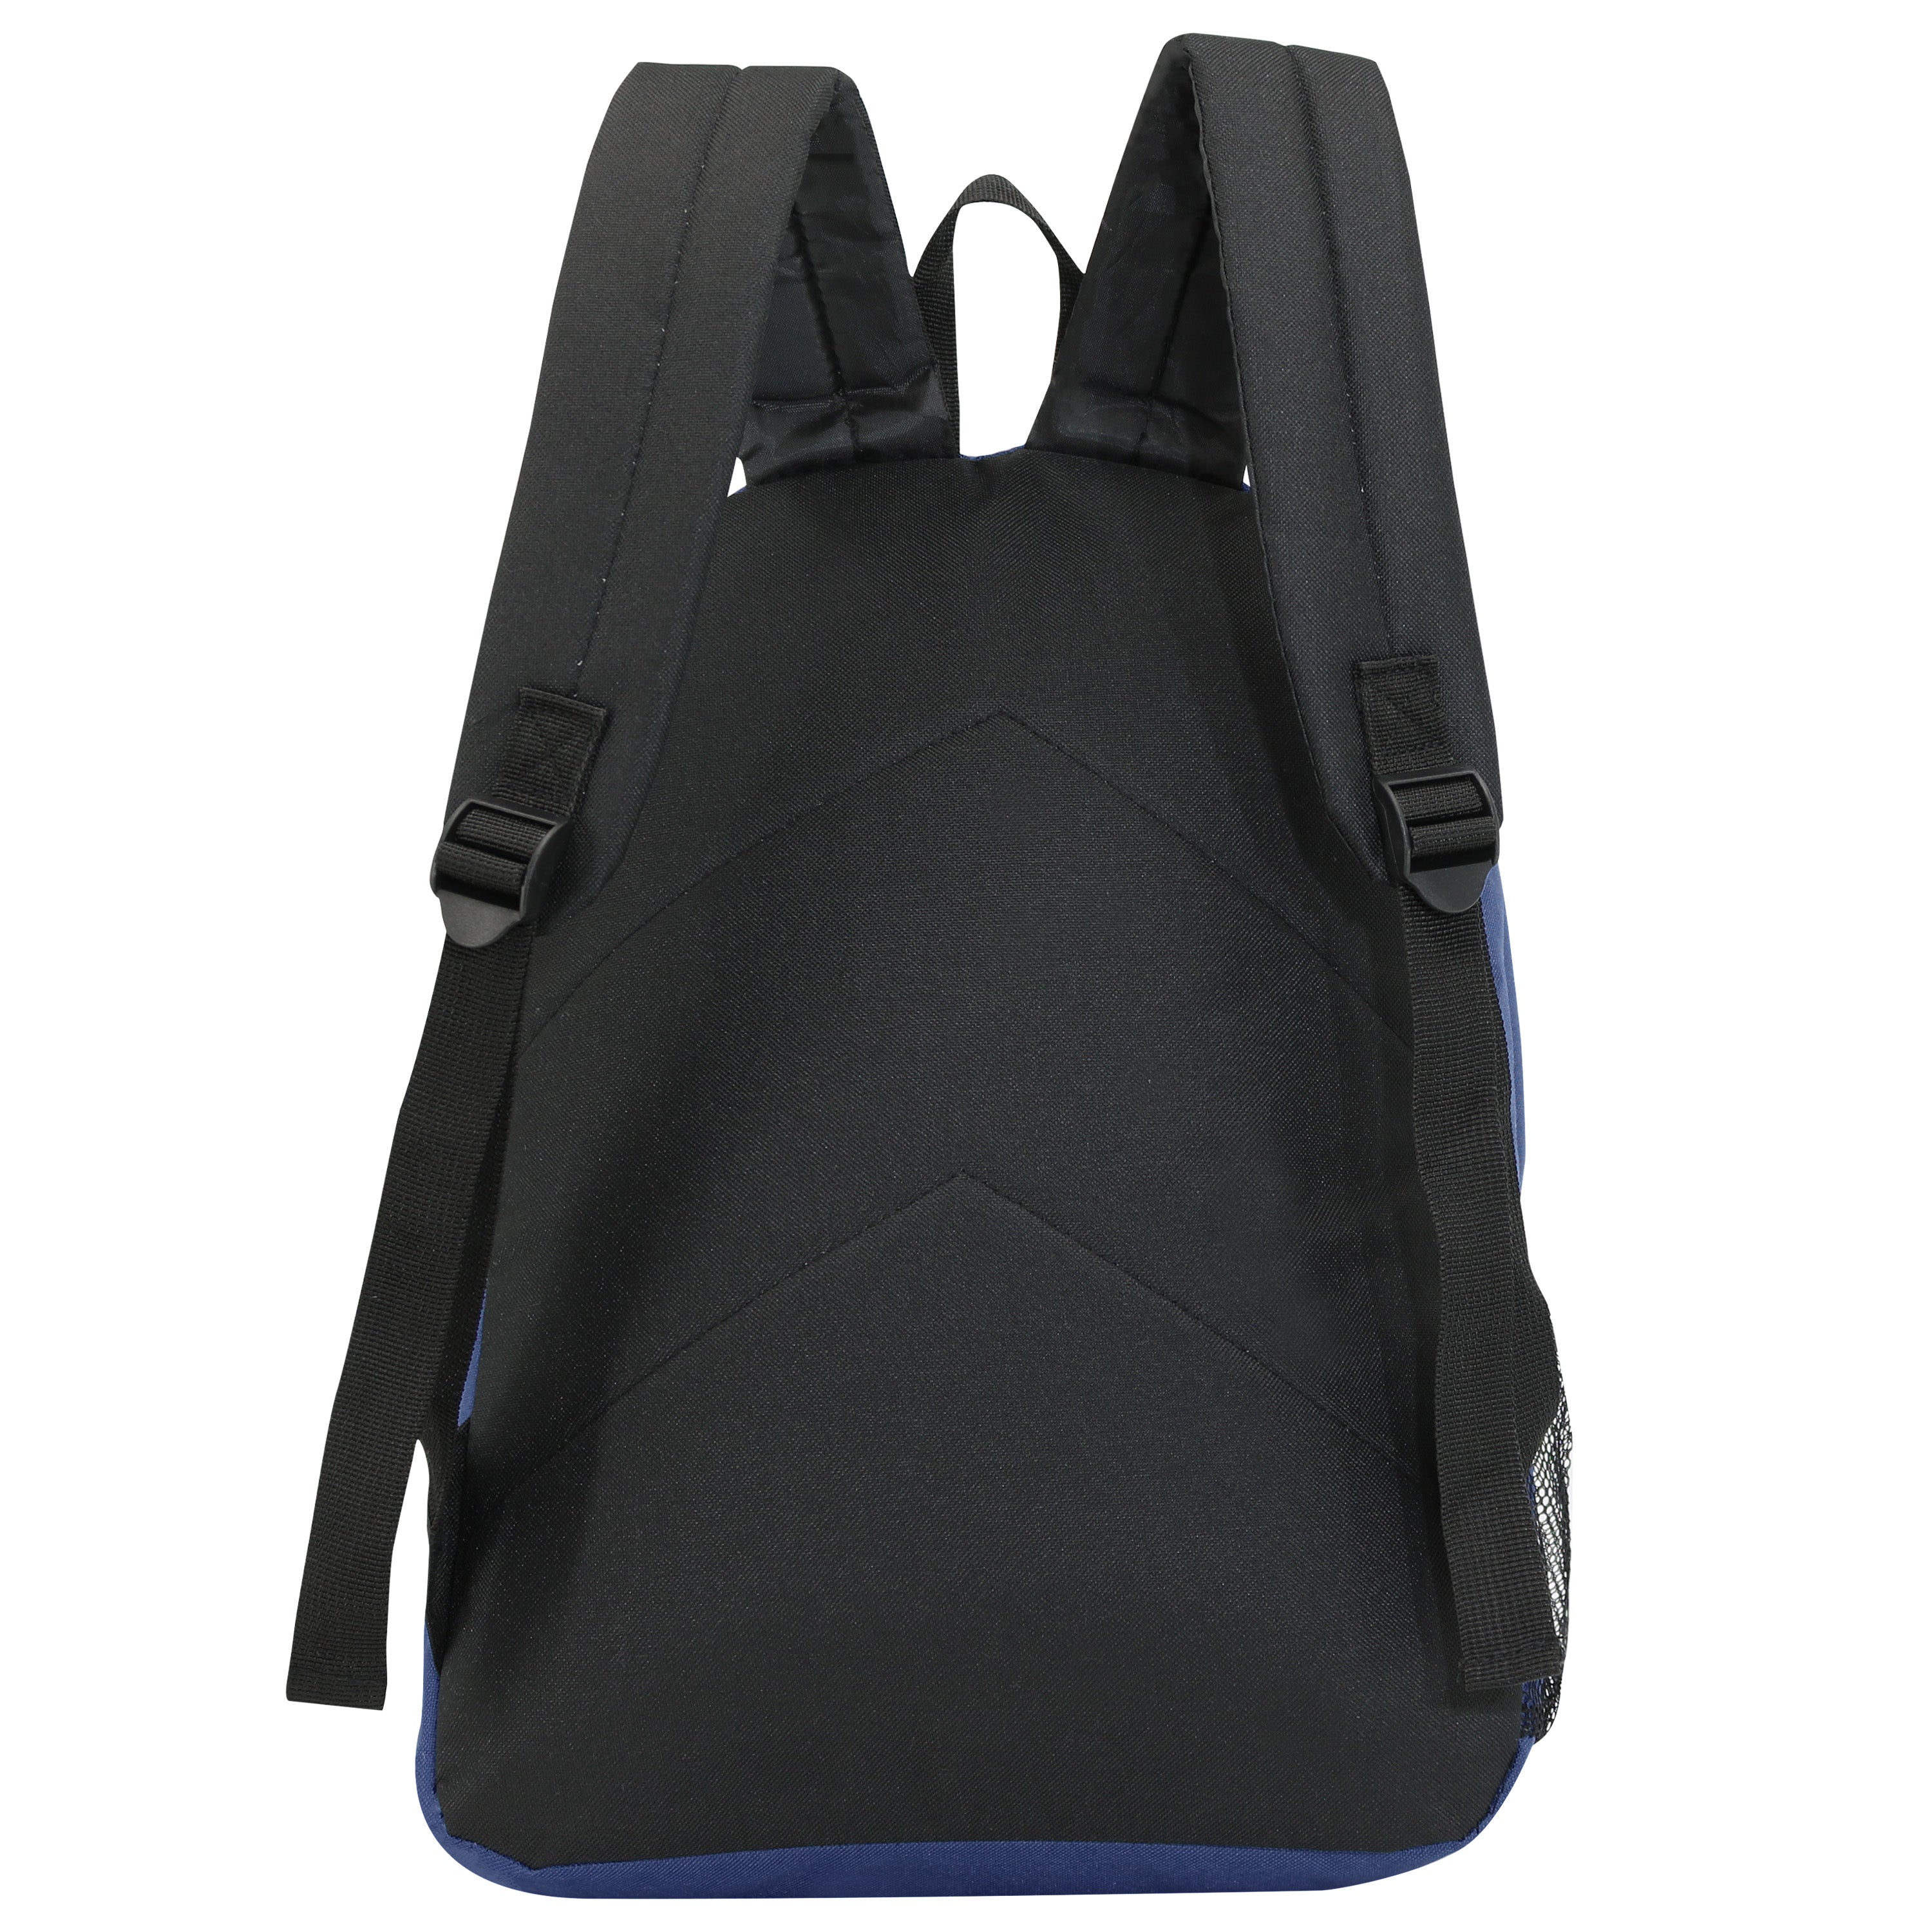 17" Kids Wholesale Backpacks In Navy - Wholesale Case of 24 Bookbags